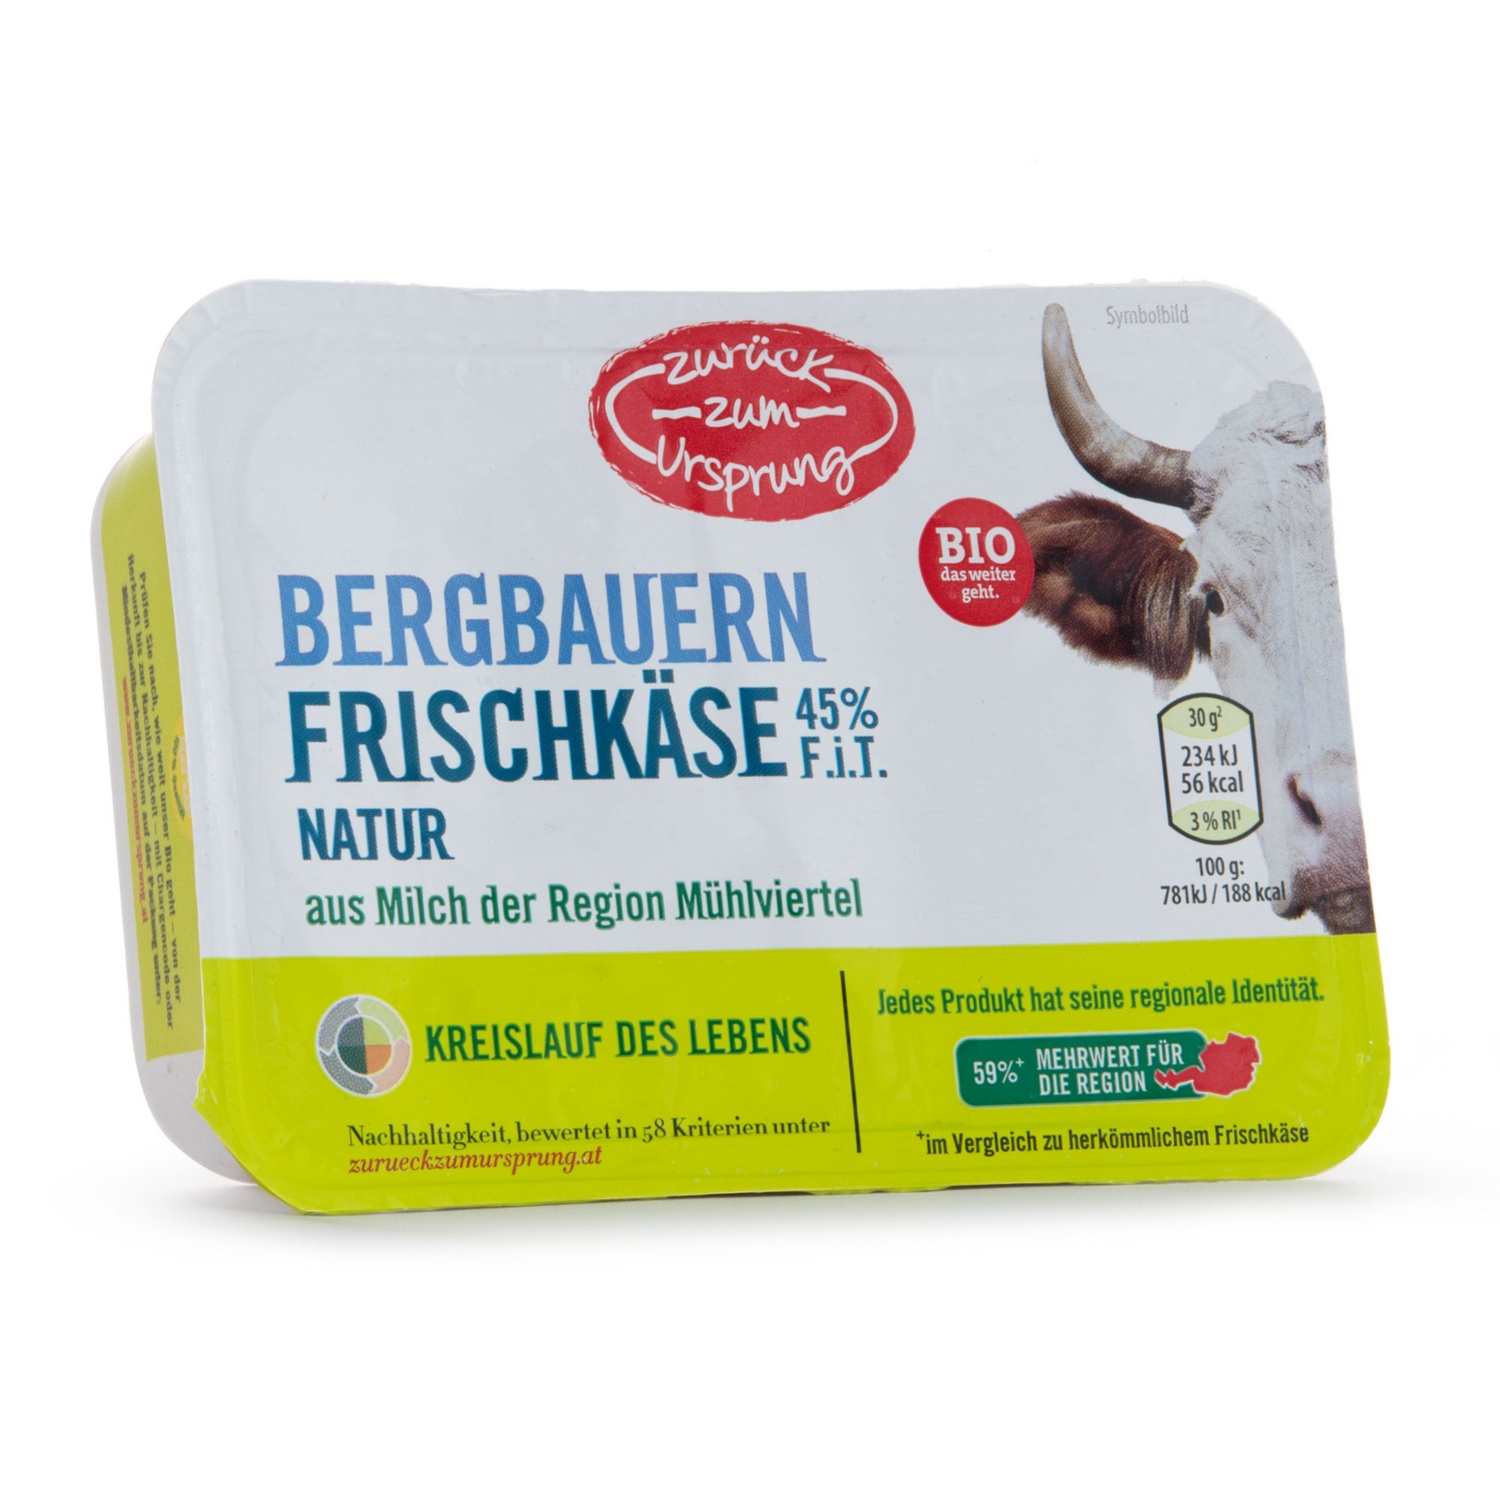 ZURÜCK ZUM URSPRUNG BIO-Bergbauern-Frischkäse, Natur 45%